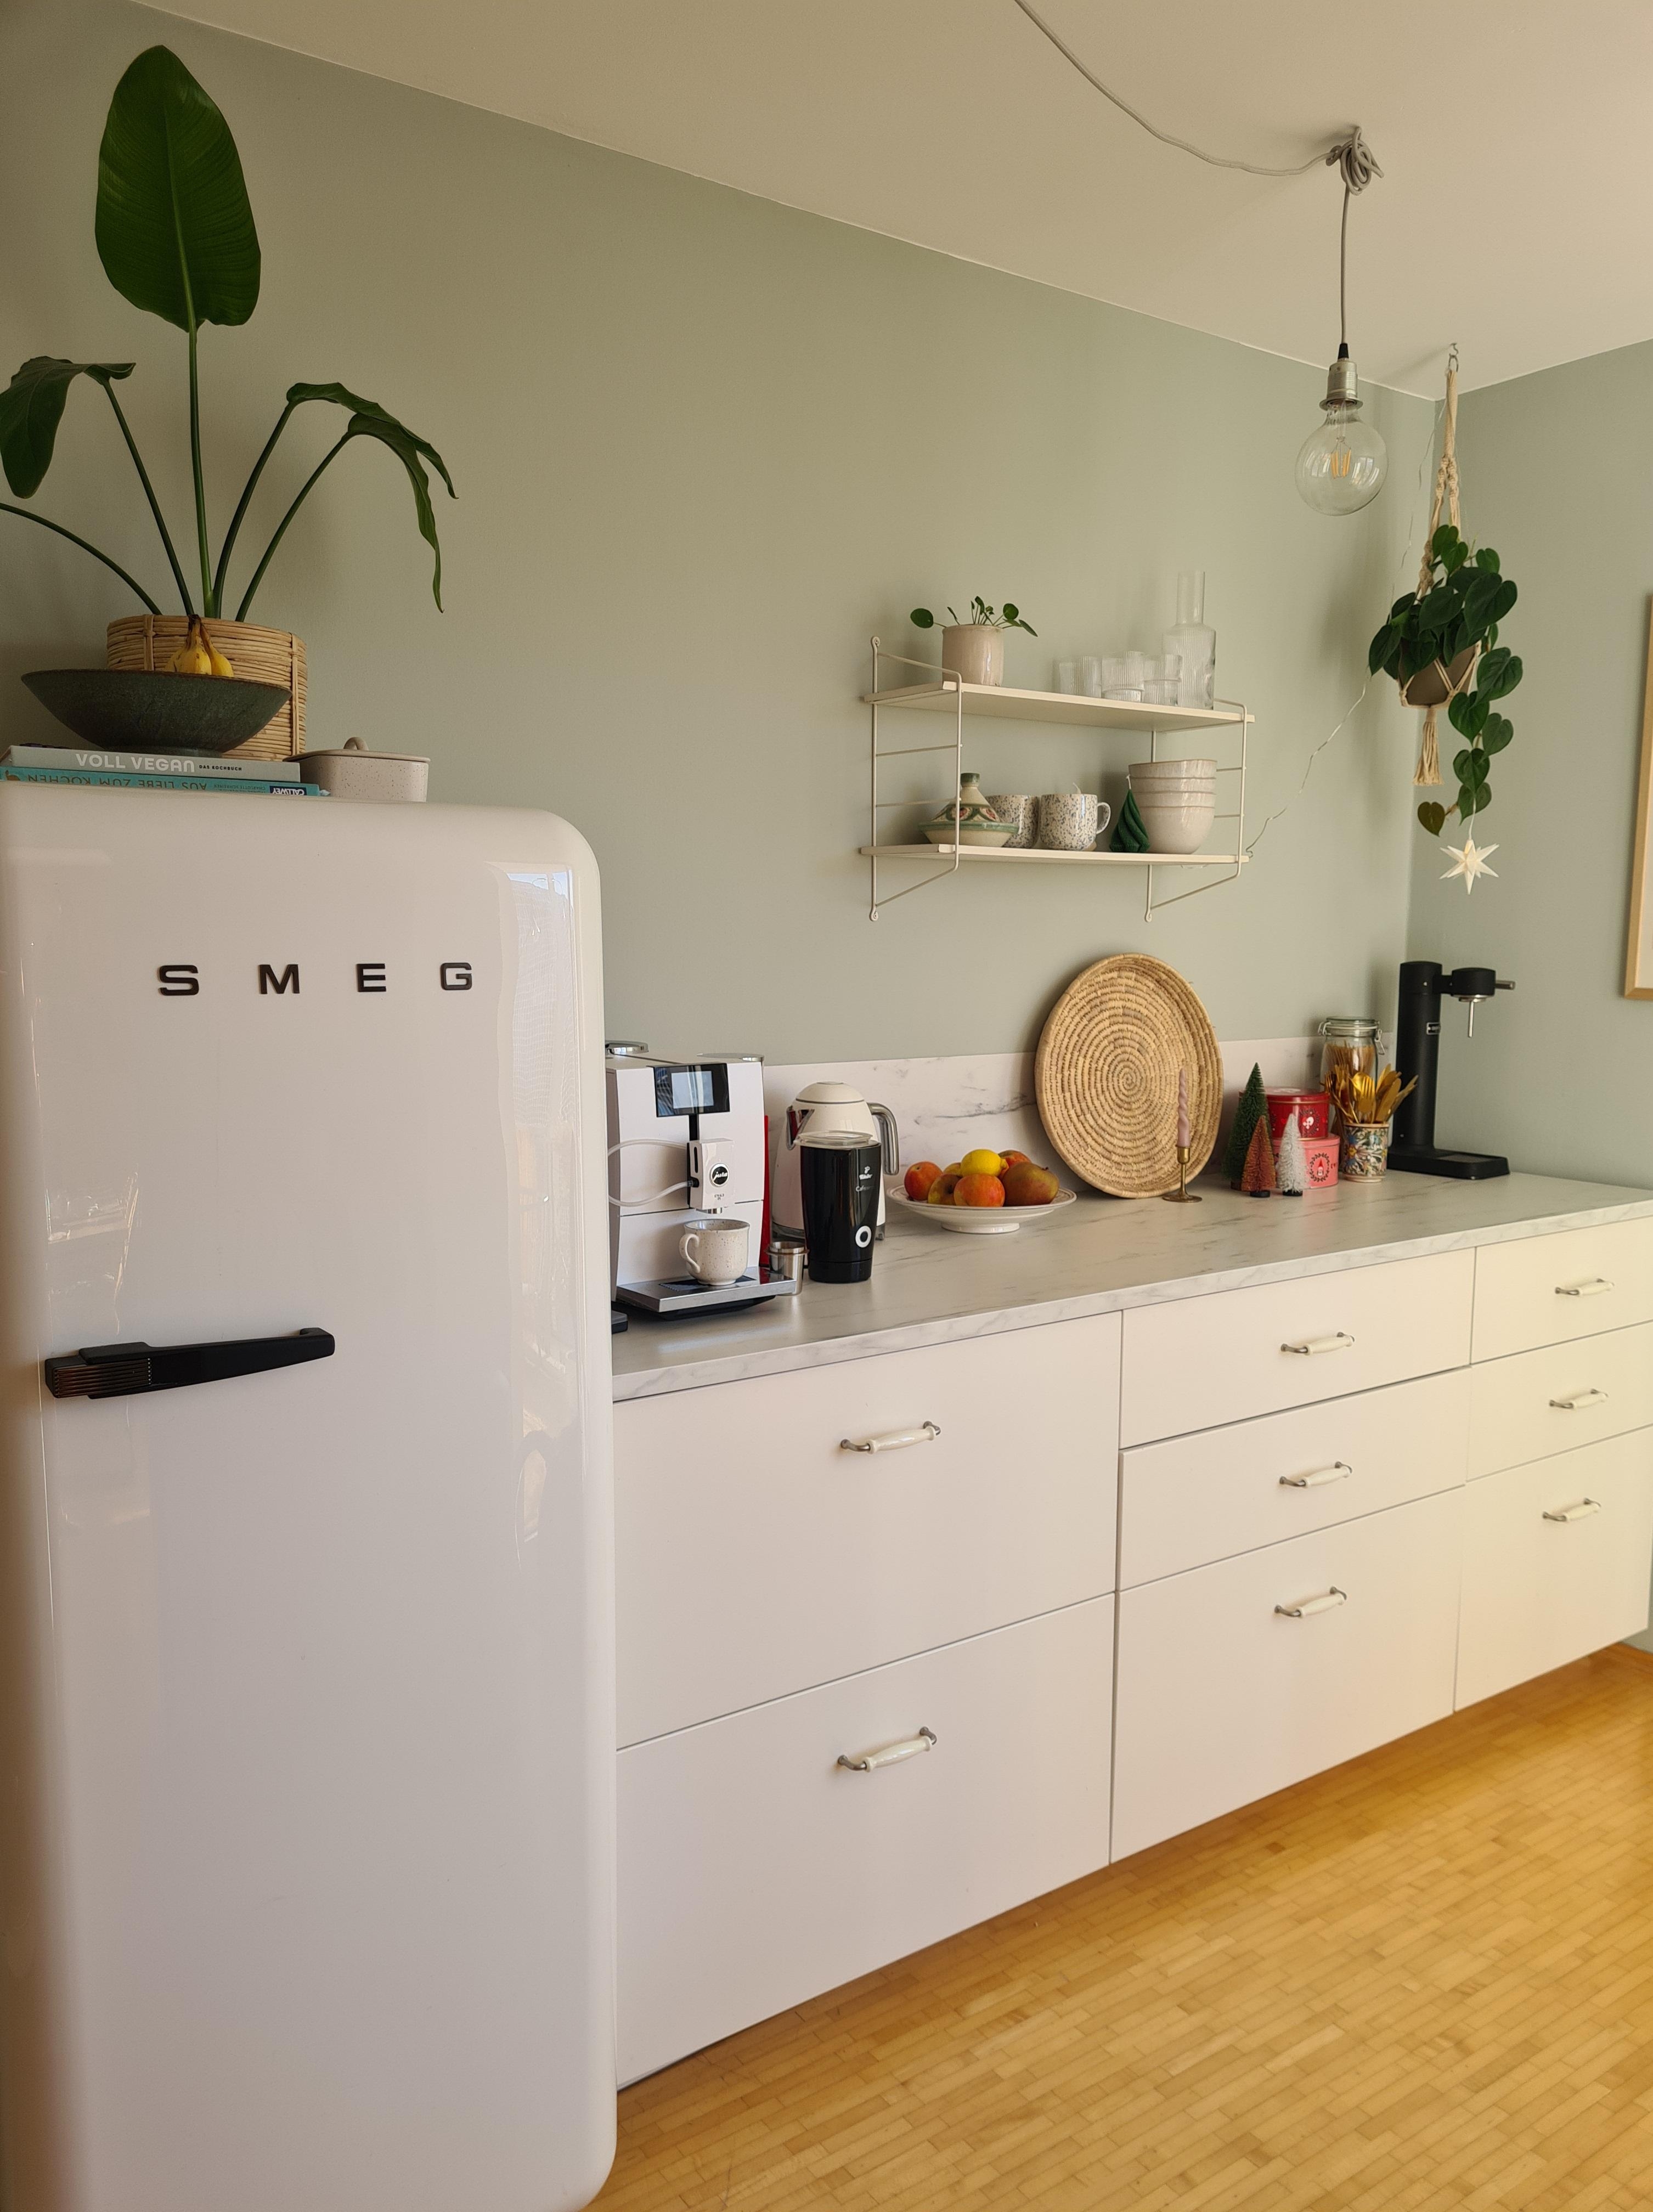 Endlich mal wieder ein paar Sonnenstrahlen in der Küche 🌟
#küche #ikeaküche #kühlschrank #wandfarbe #stauraum
#weißeküche #weisseküche